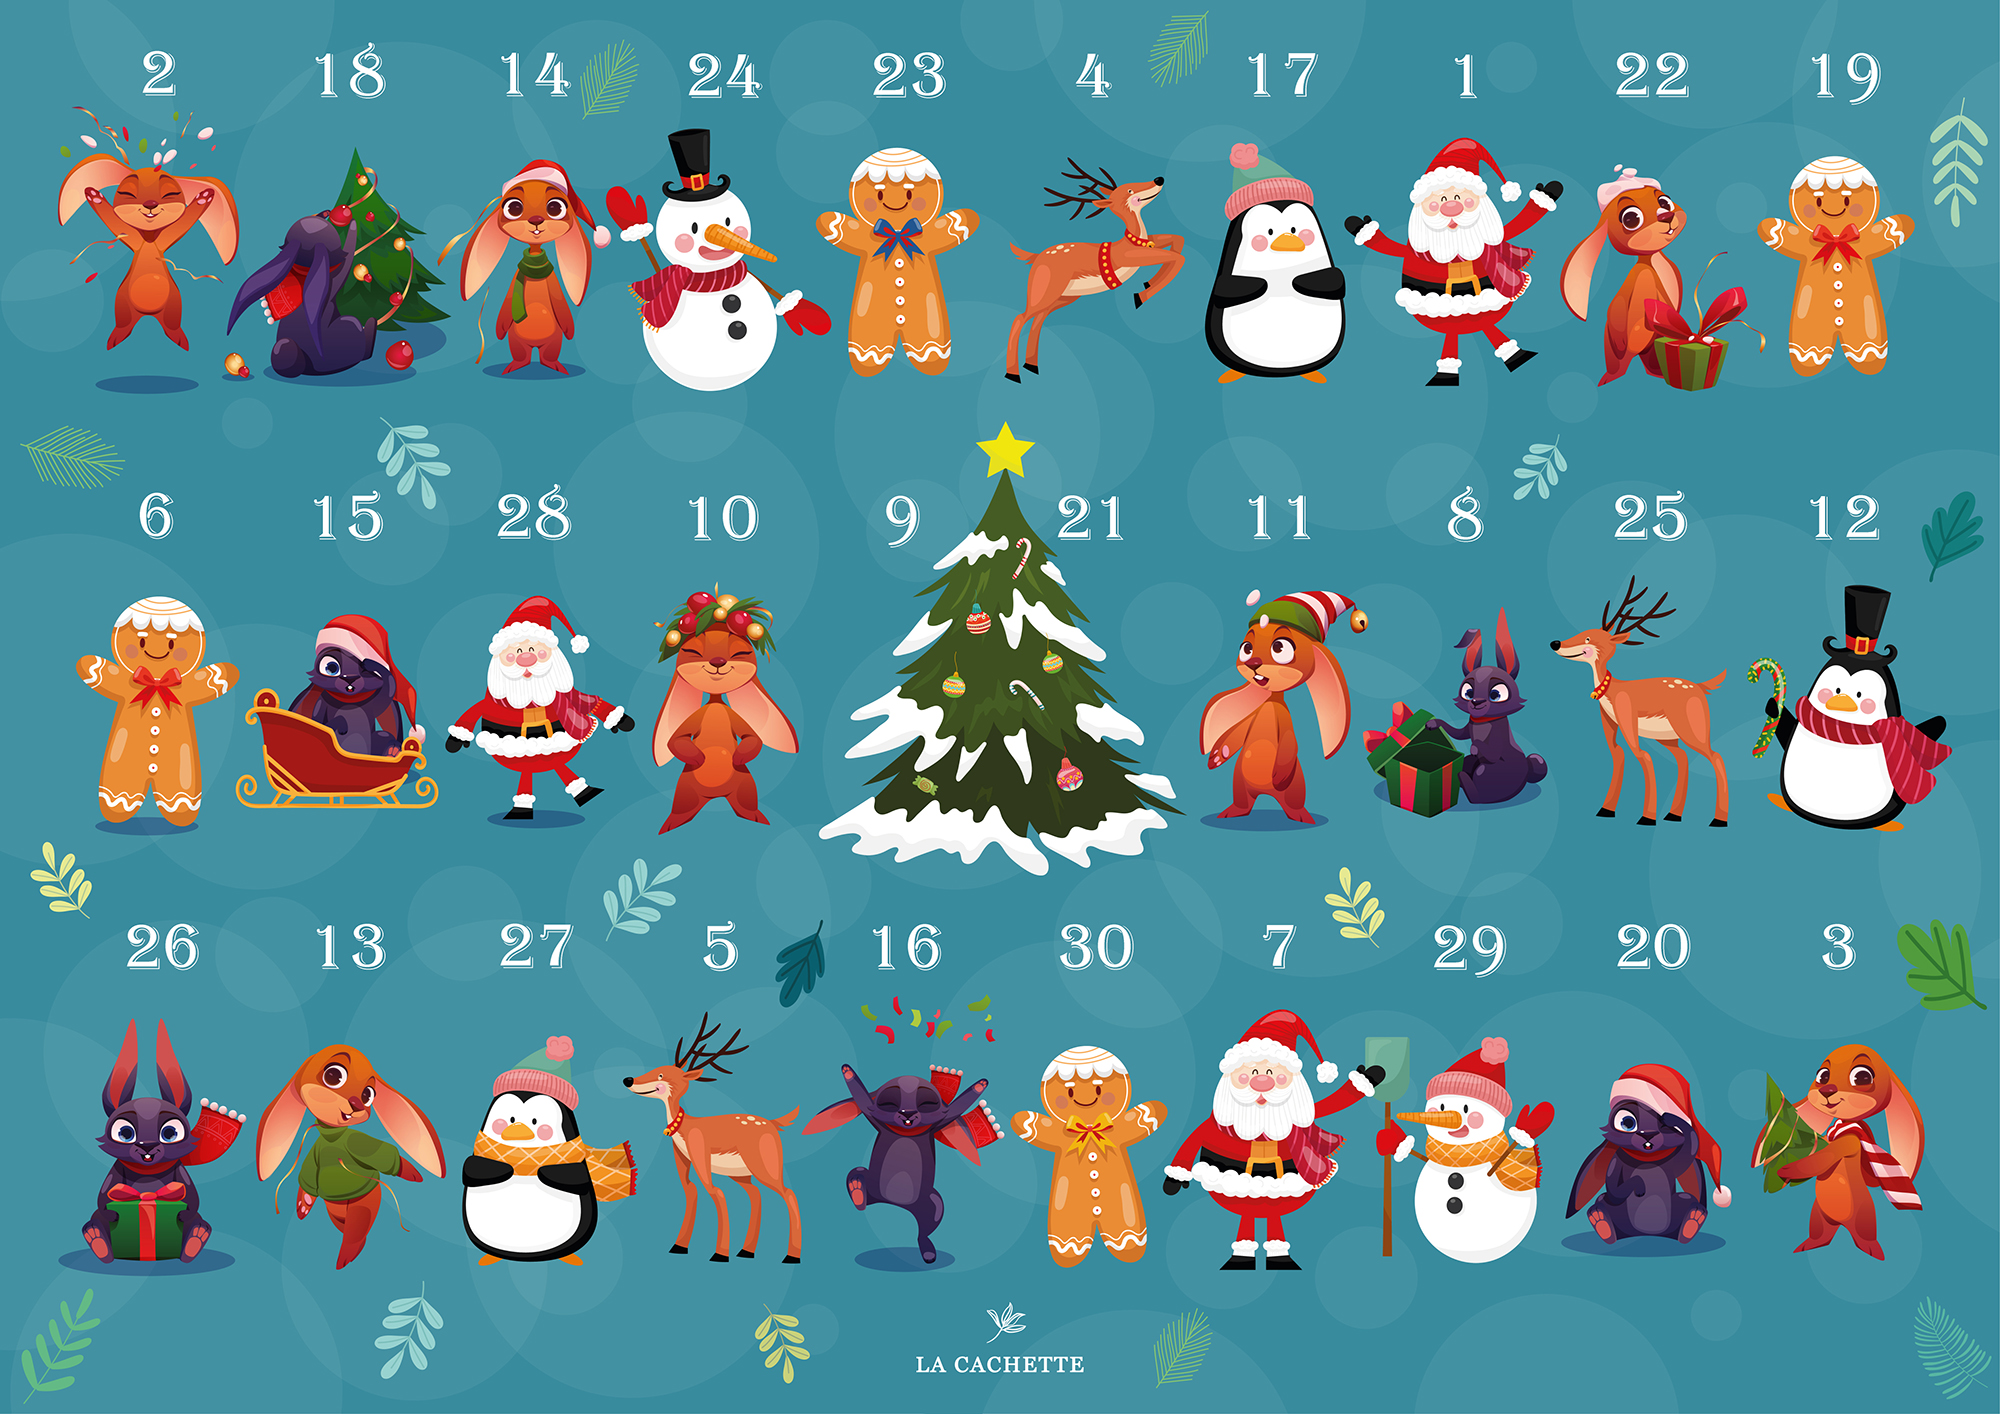 Подарочный набор парфюмерии La Cachette Адвент-календарь Новый Год 30 шт по 2 мл подарочный новогодний календарь с ампулами ampoule advent calendar